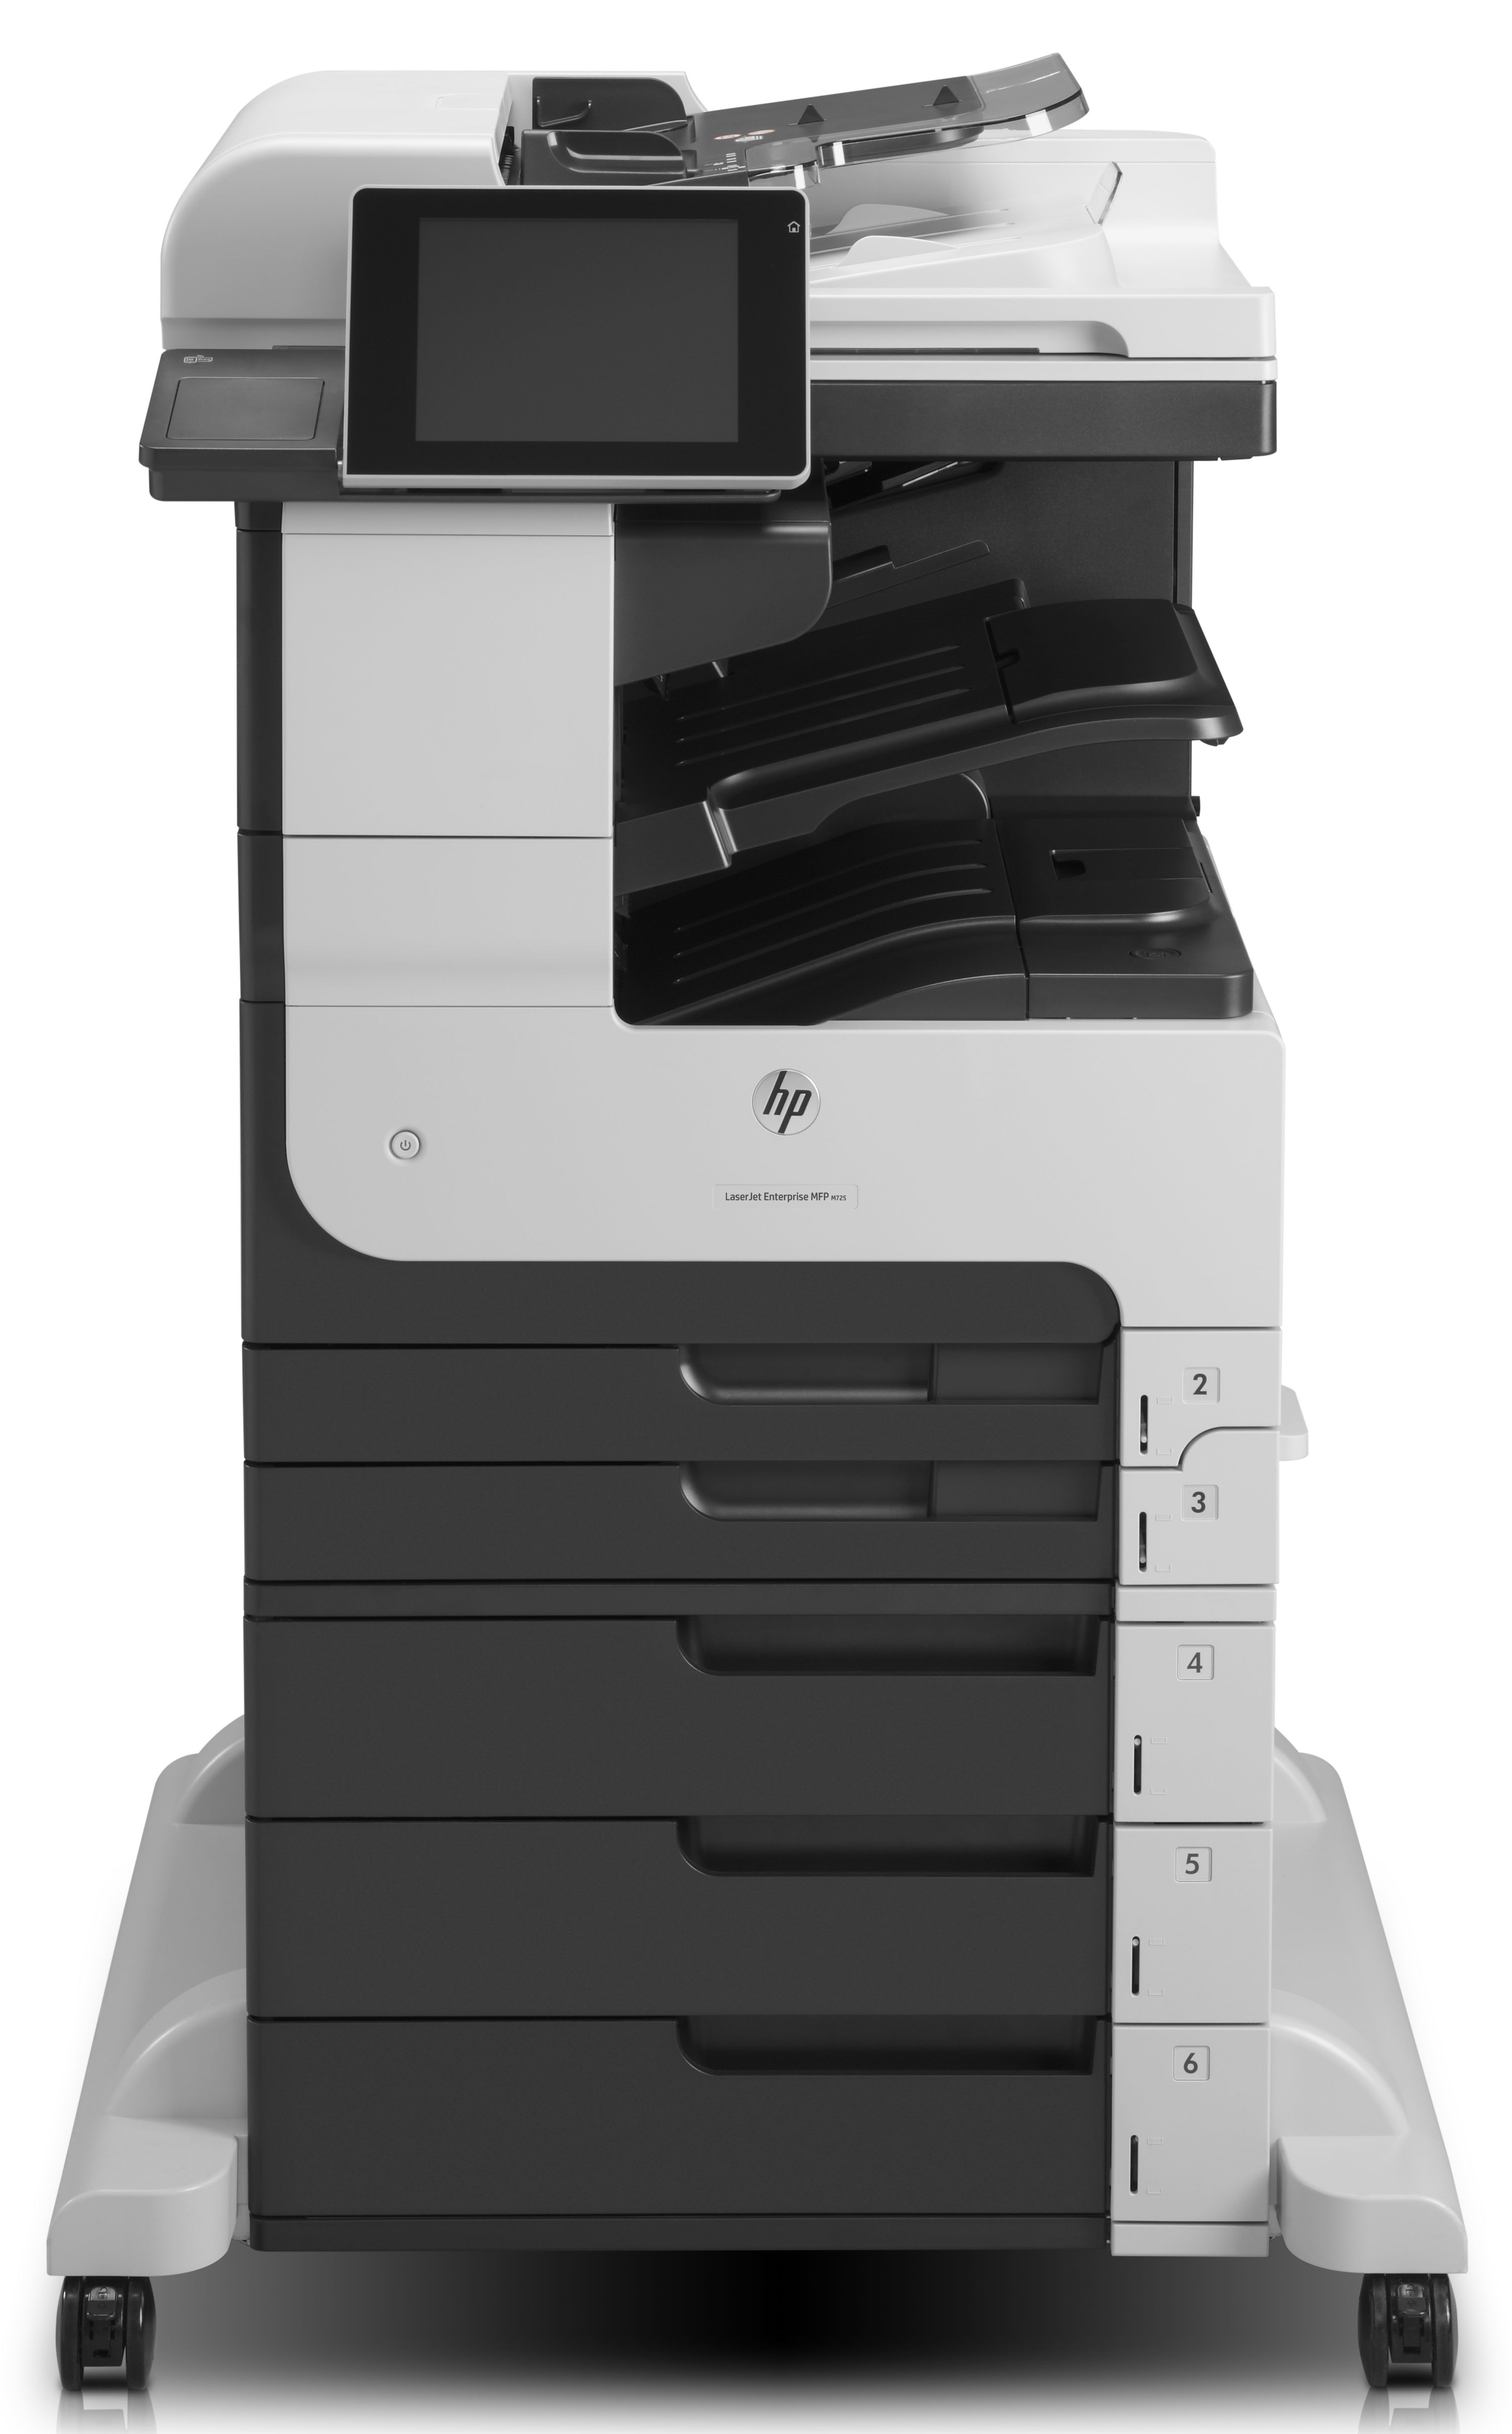 HP HP LaserJet Enterprise MFP M725z, Black and white, Printer voor Business, Afdrukken, kopi&#235;ren, scannen, faxen, Invoer voor 100 vel; Printen via de USB-poort aan voorzijde; Scannen naar e-mail/pdf; Dubbelzijdig printen